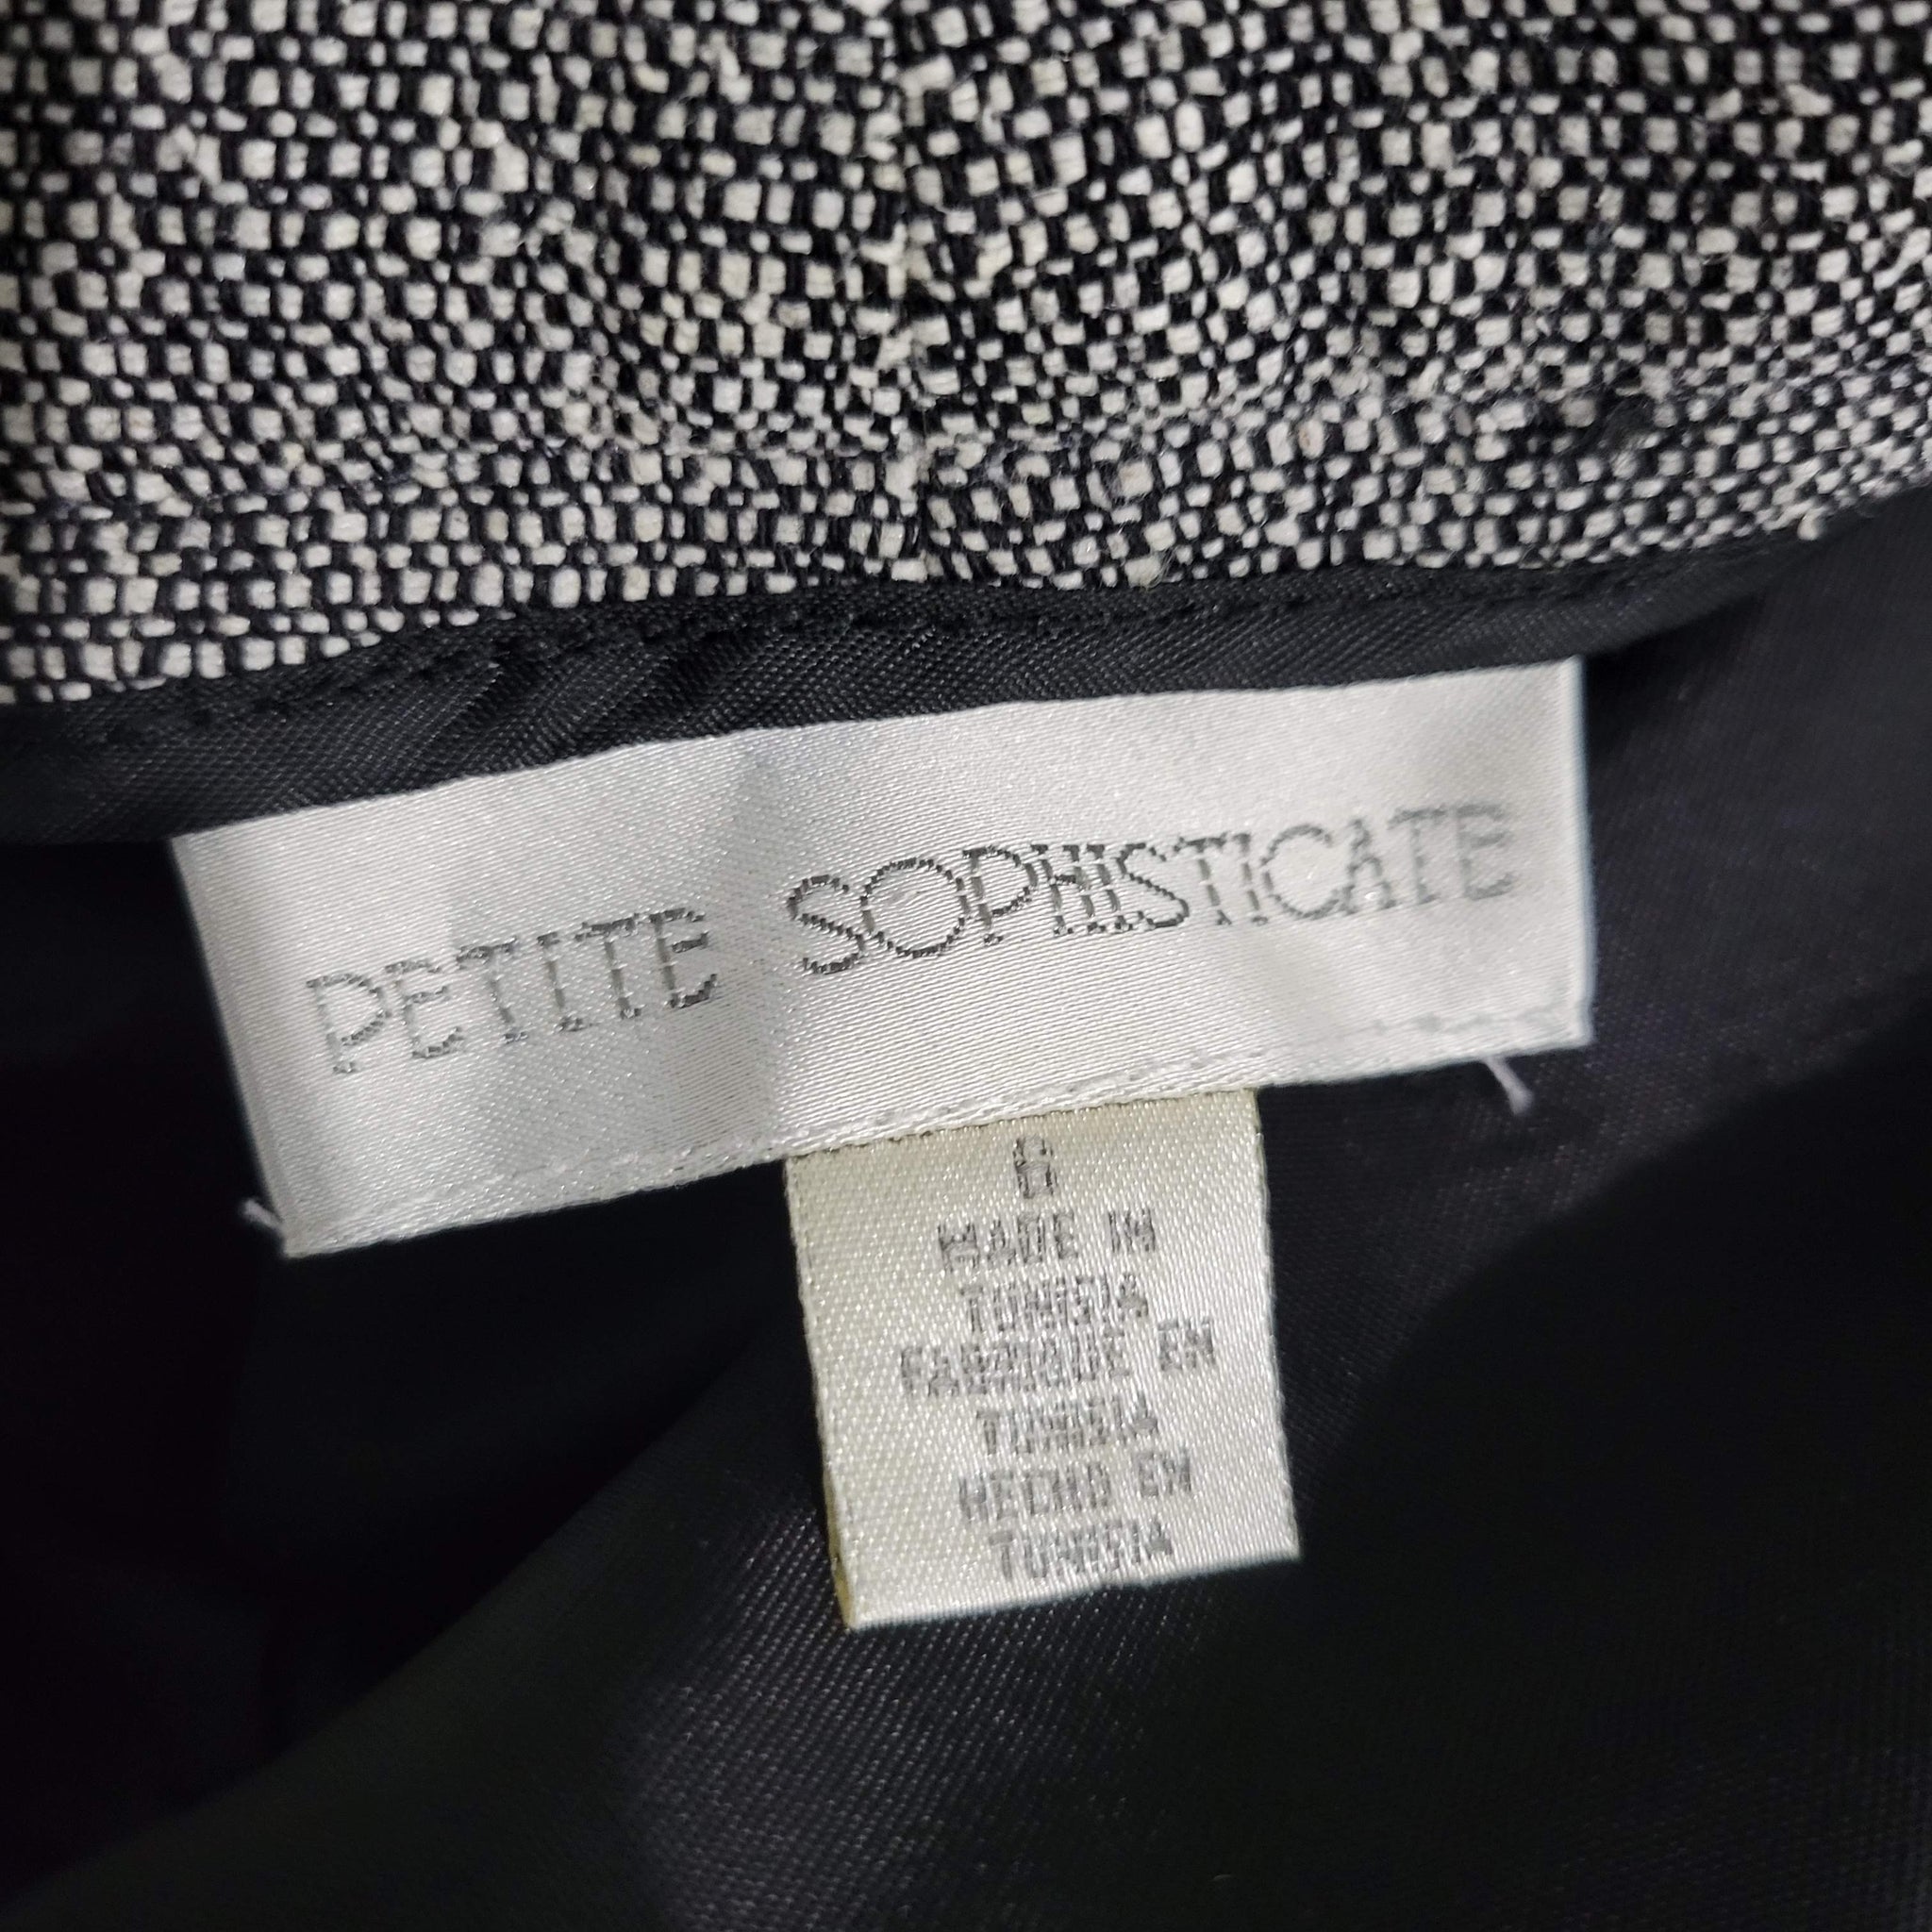 Vintage Petite Sophisticate Dress Pants Size 4